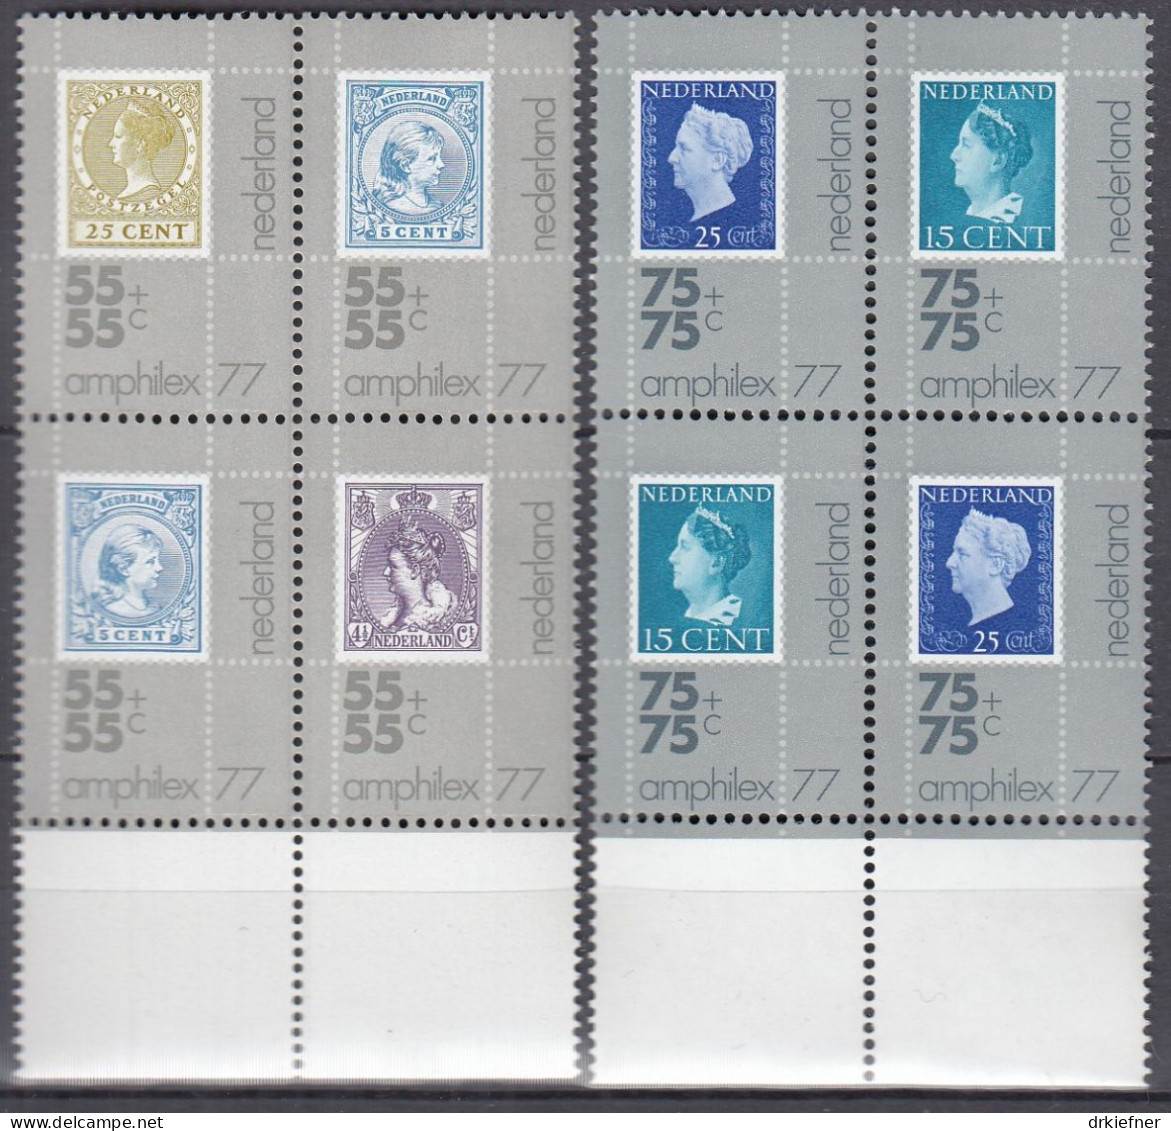 NIEDERLANDE  1083-1087, 4erBlock, Postfrisch **, Internationale Briefmarkenausstellung AMPHILEX ’77, 1976 - Nuevos